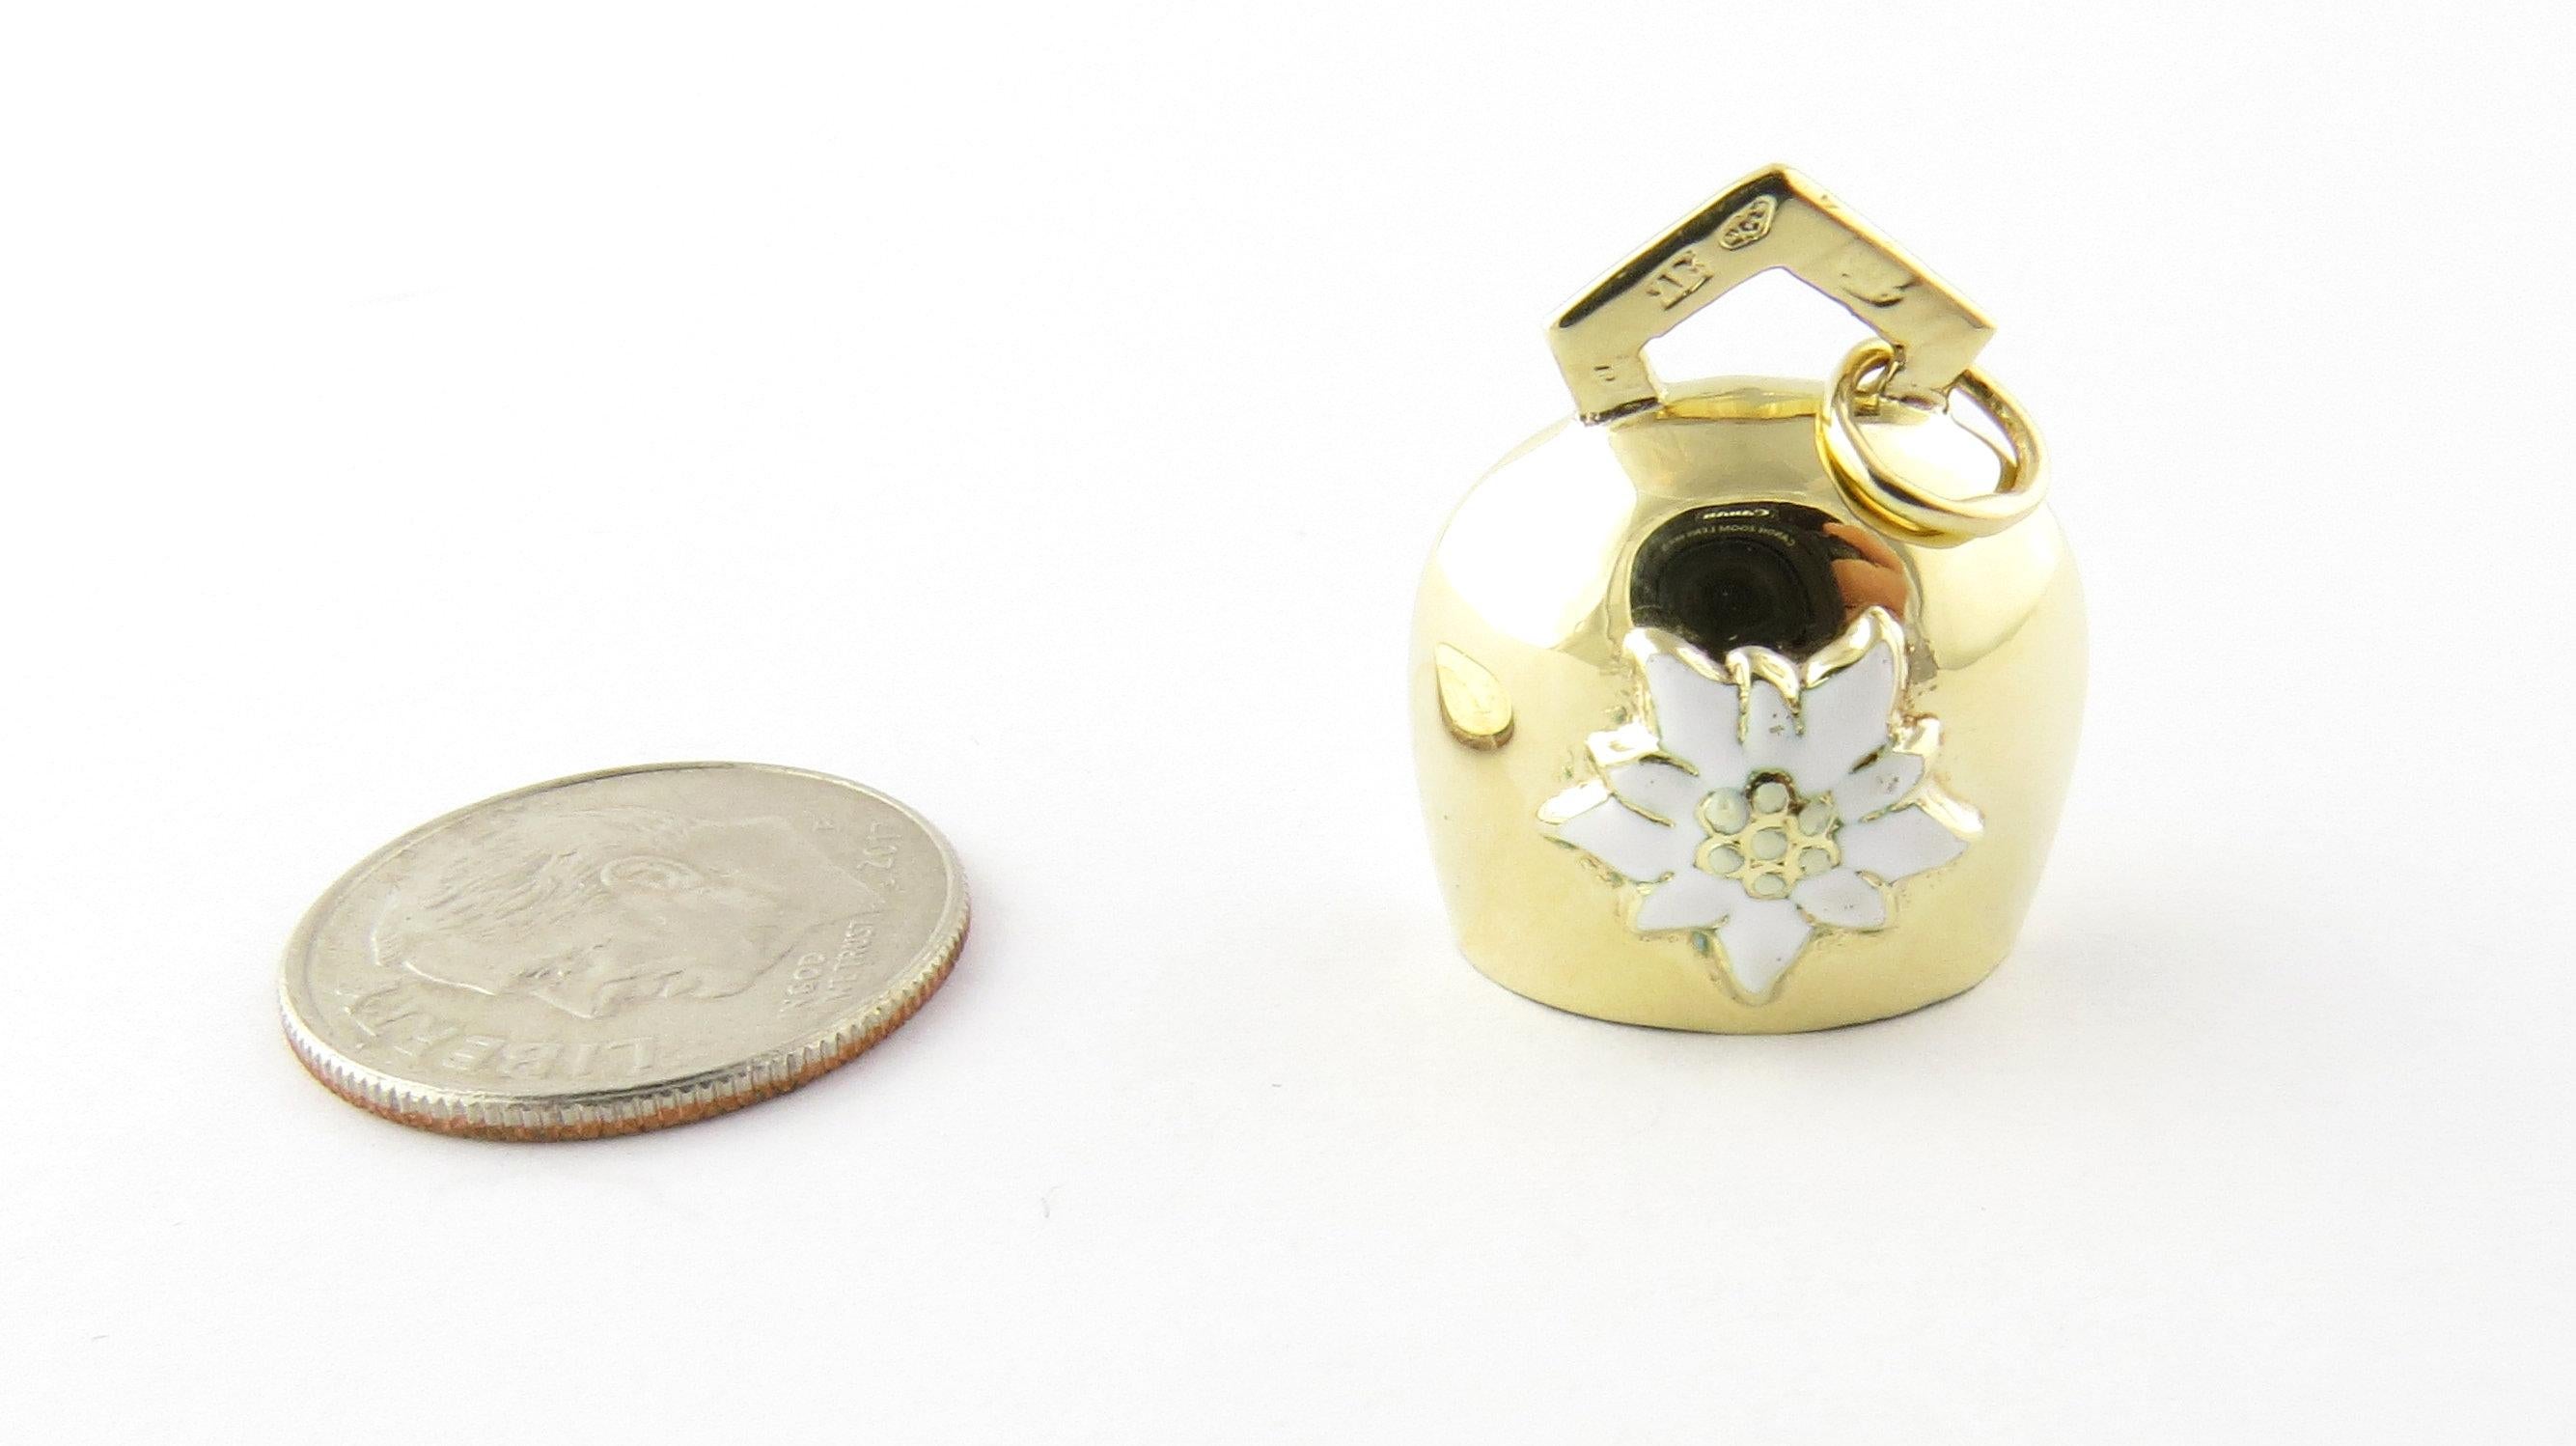 Women's Mechanical 14 Karat Yellow Gold Bell with Edelweiss Flower Charm